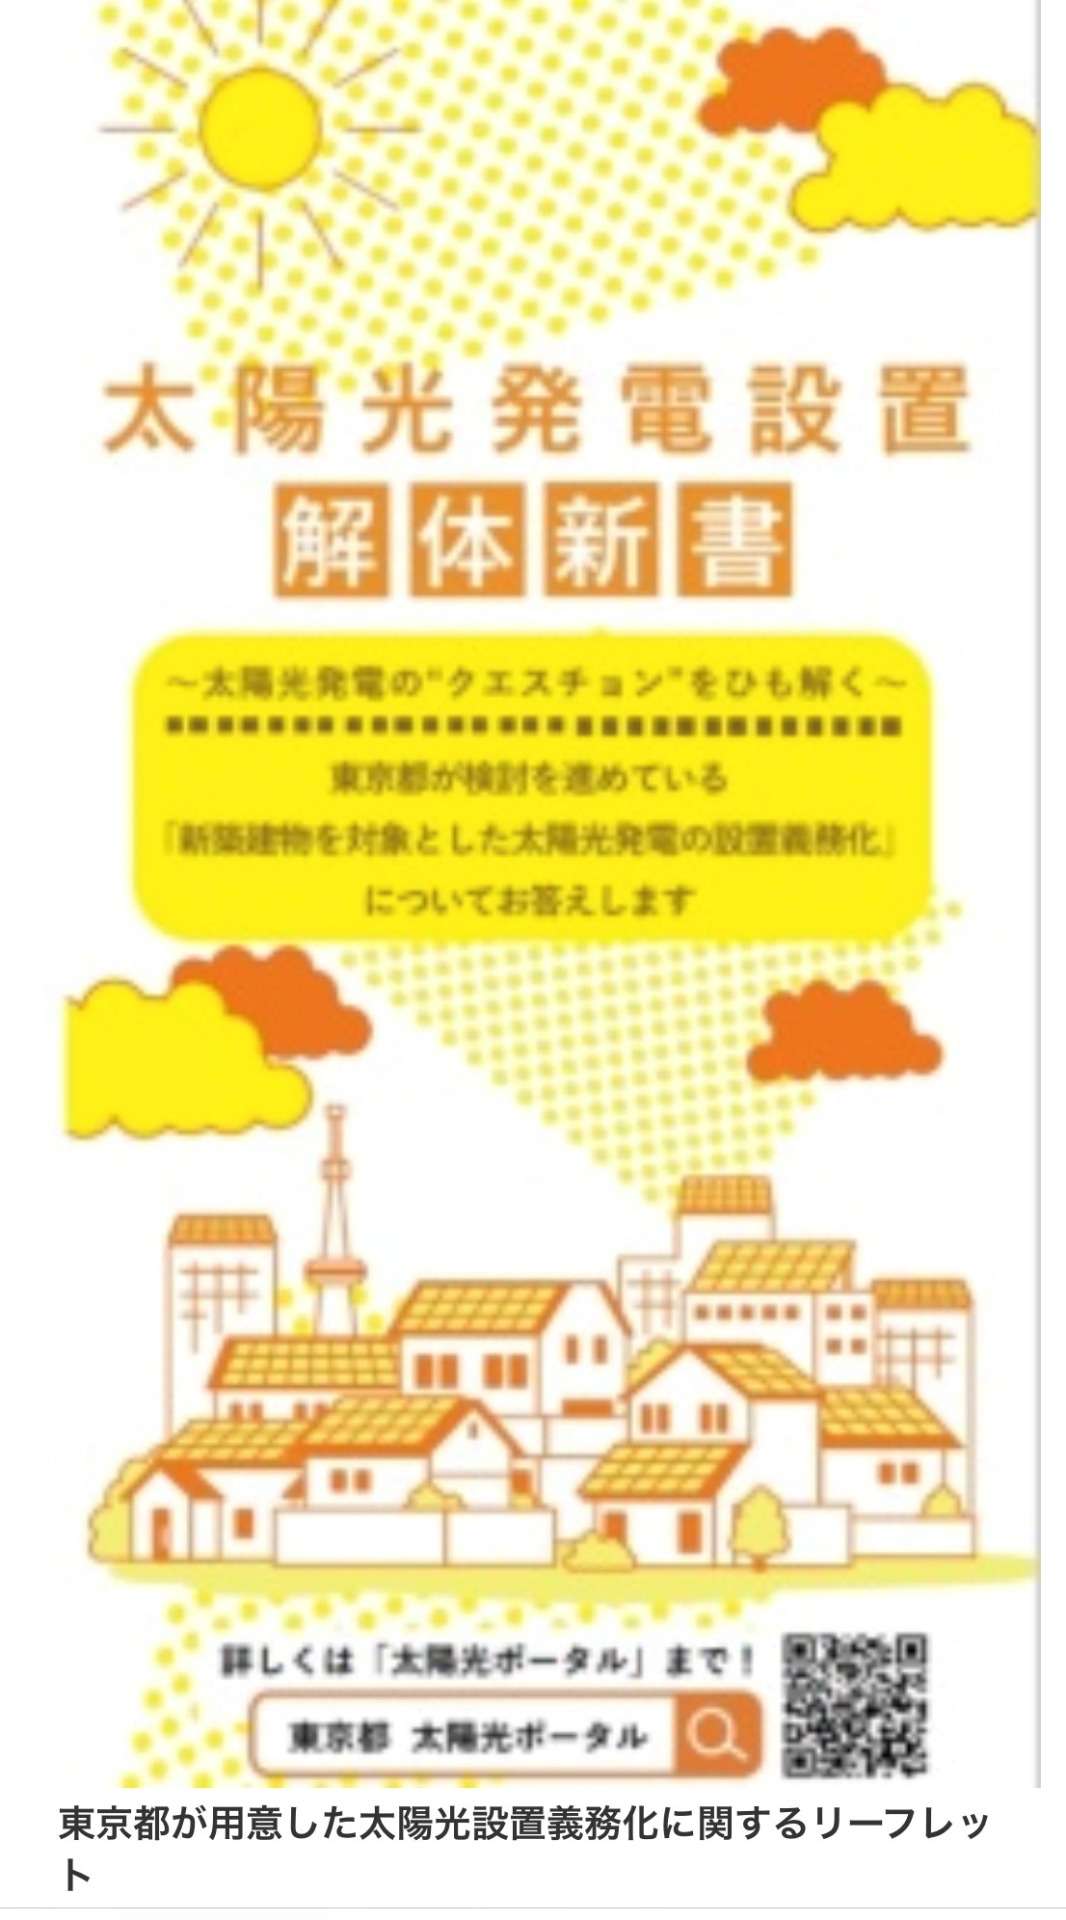 【光熱費の高騰】これから松山市で注文住宅を建てるなら省エネ住宅